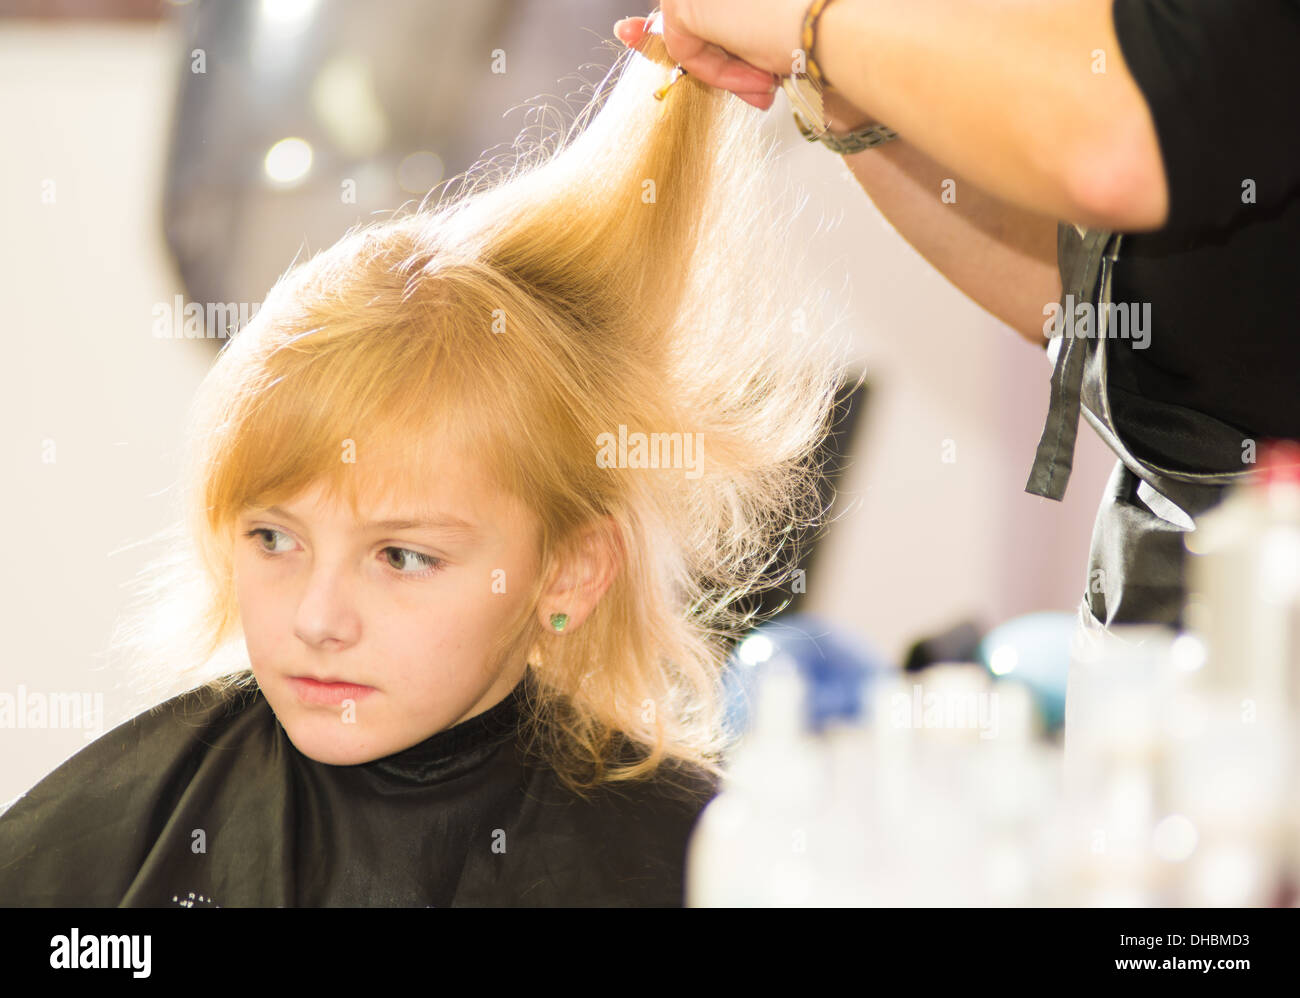 Soins des cheveux - petite fille à un salon de coiffure Banque D'Images